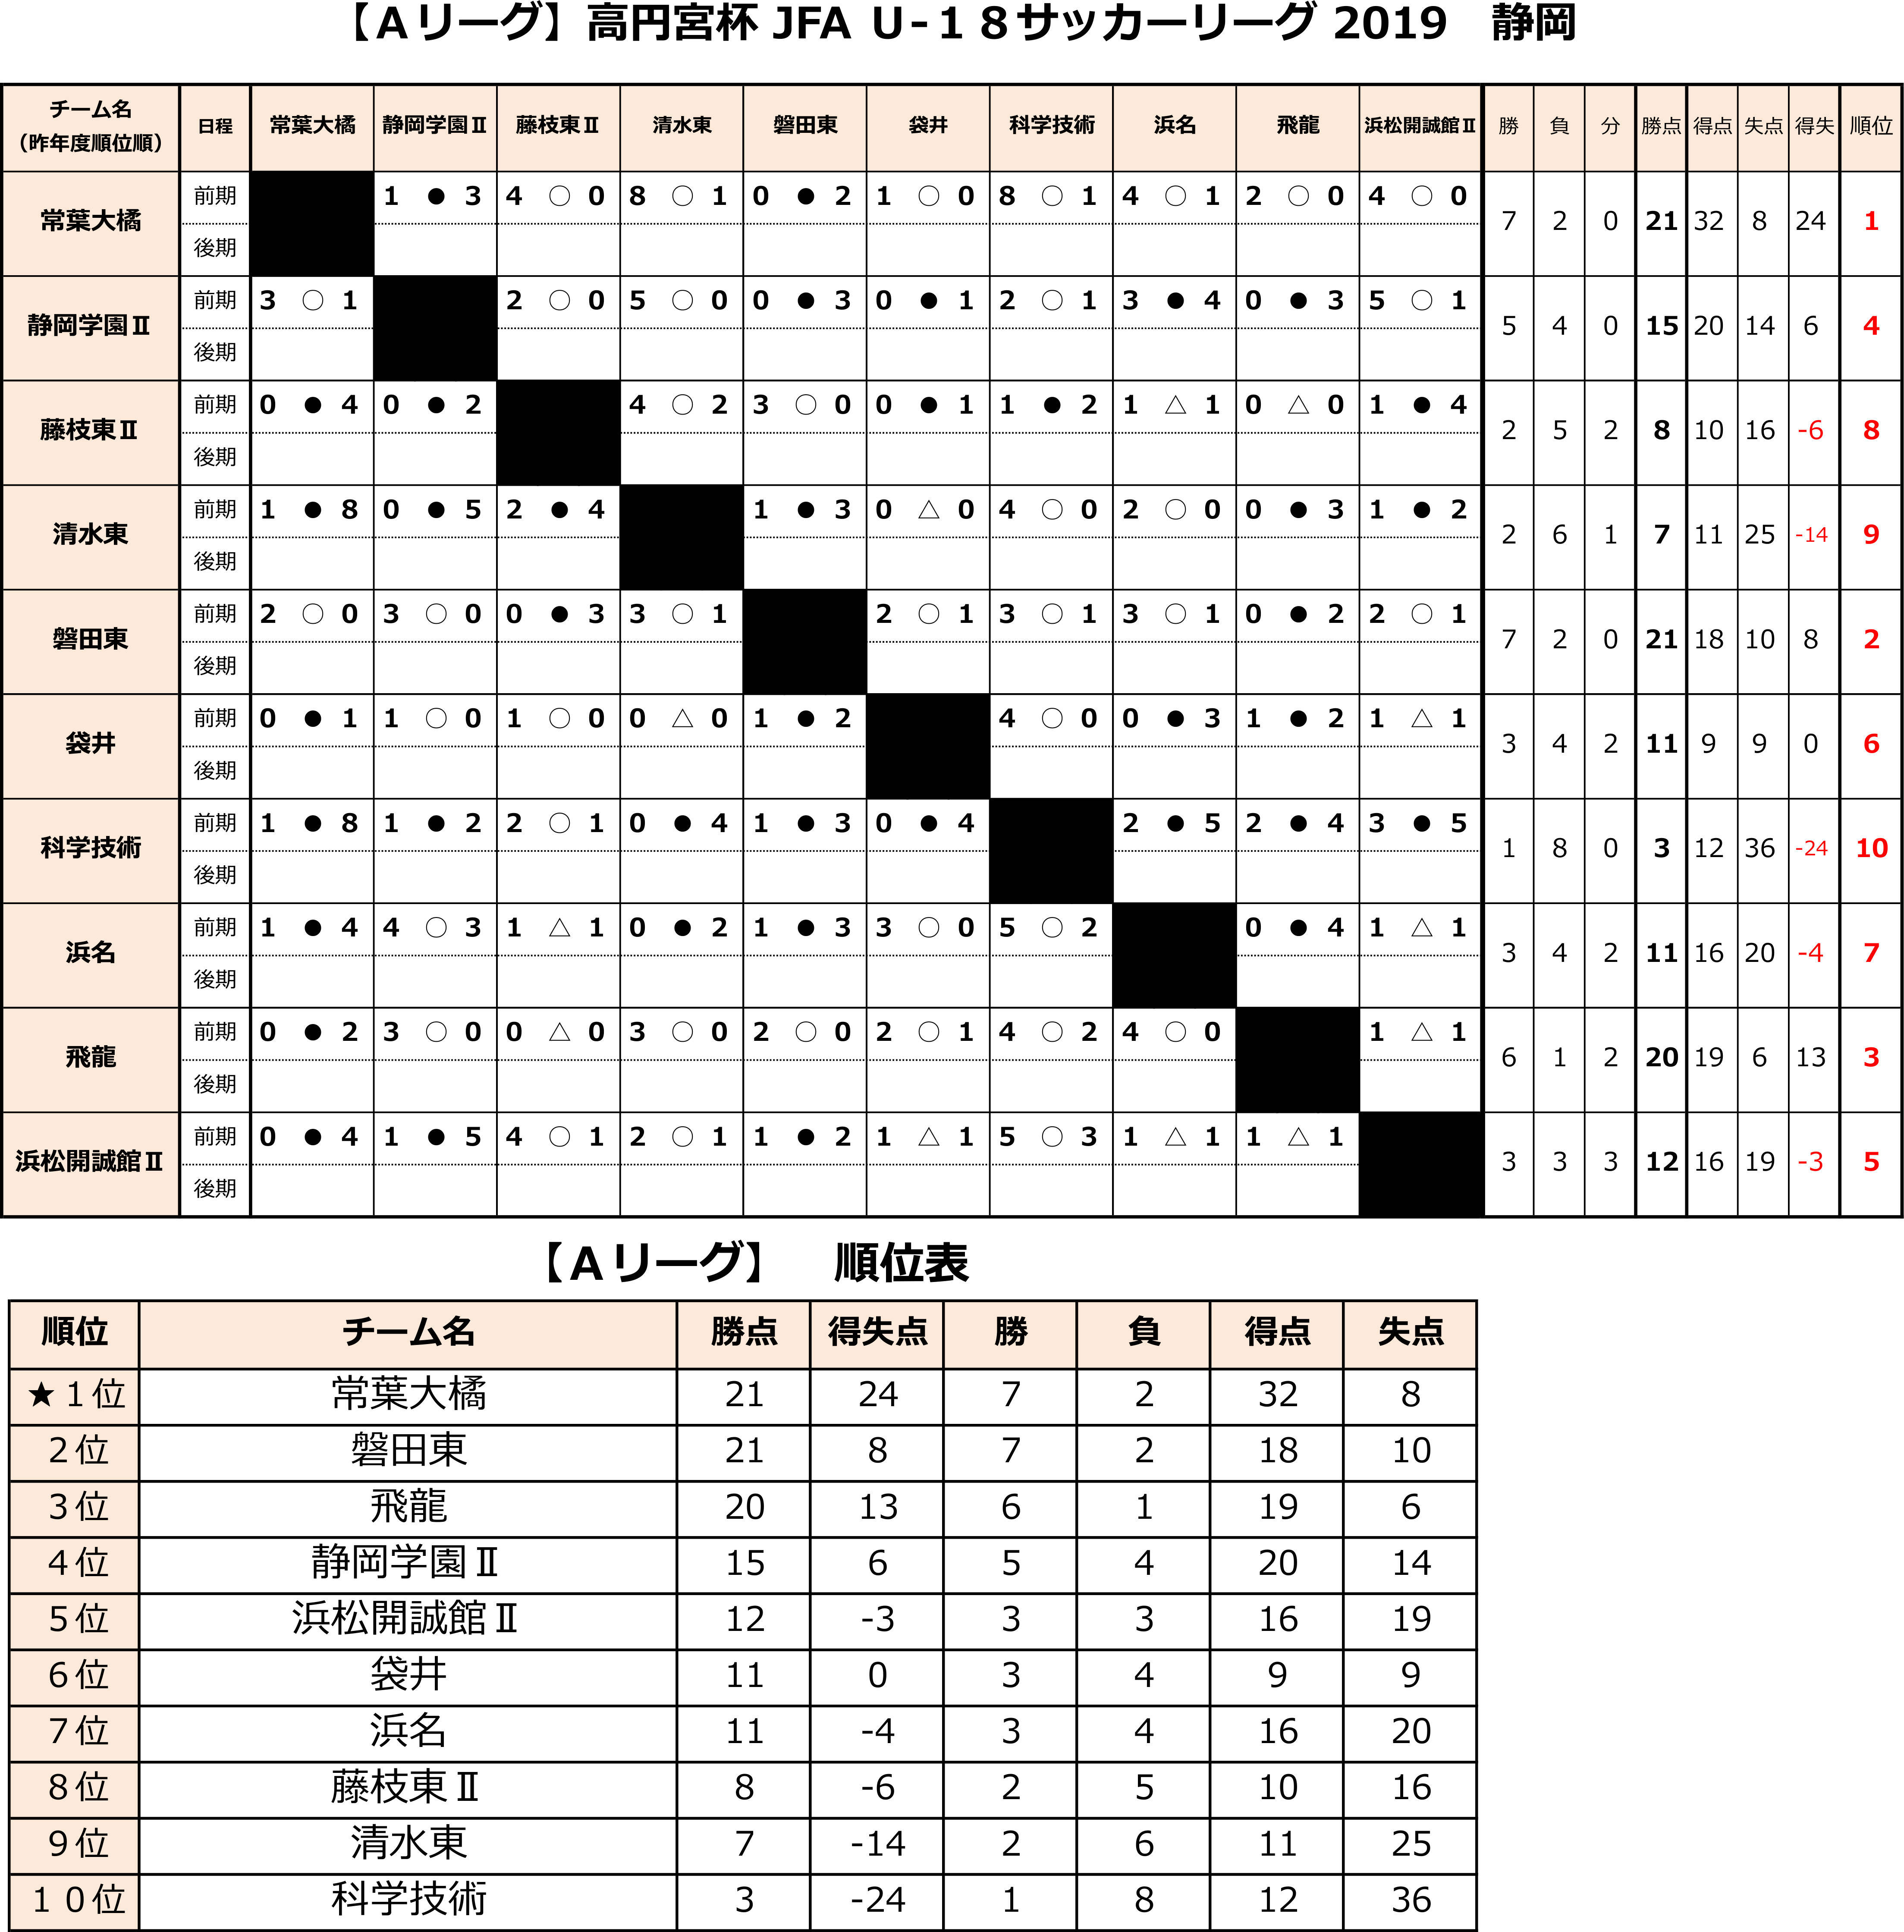 高円宮杯 JFA U-18サッカーリーグ2019 静岡 　Aリーグ前期　 トーナメント表